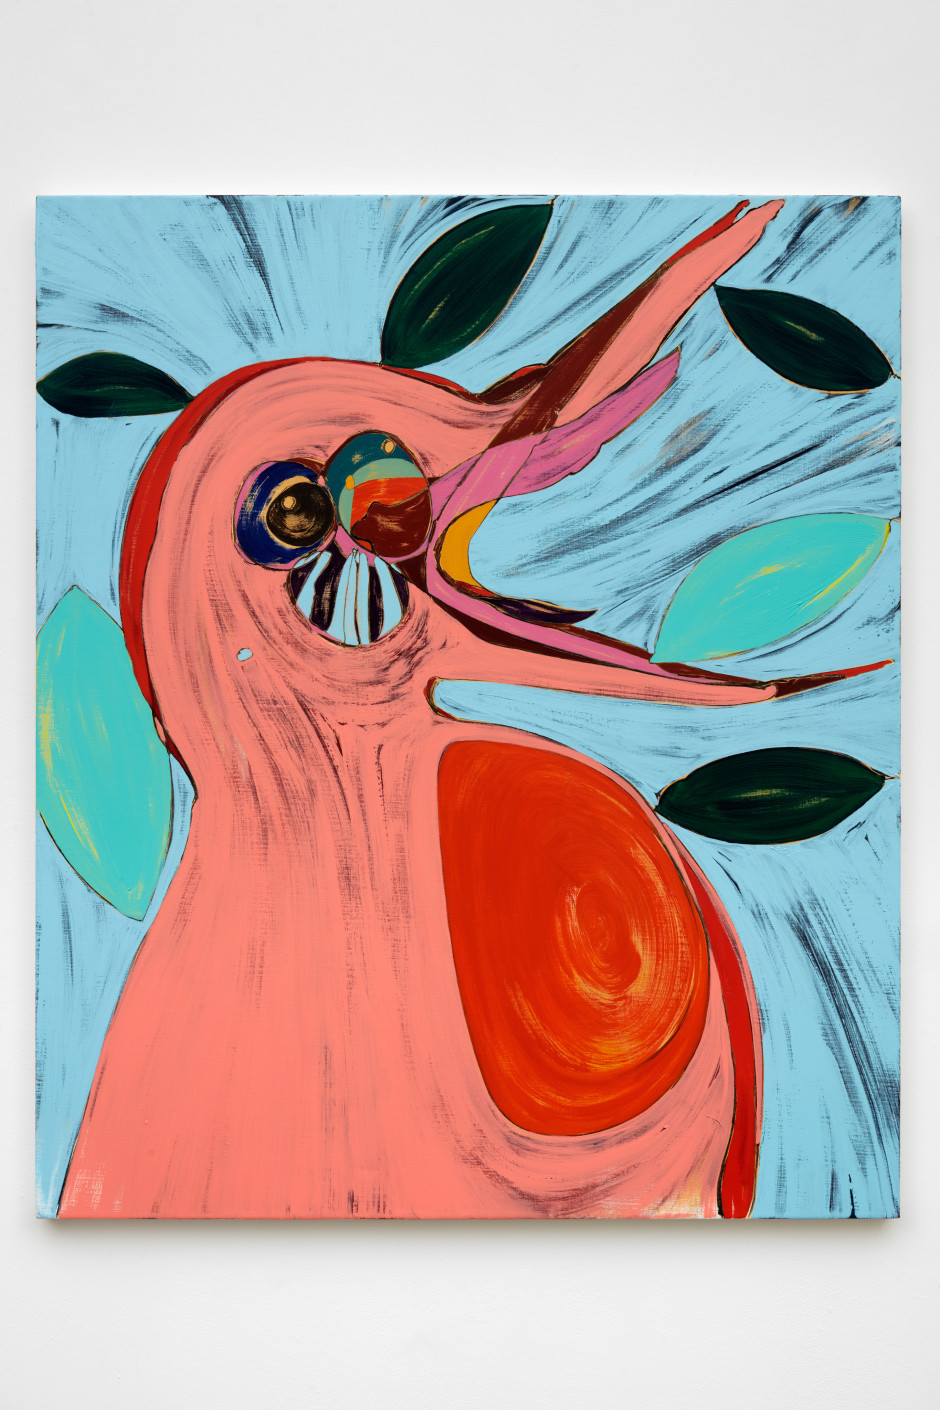 Bird call, 2021  acrylic on linen  138 x 114.8 x 3.8 cm 54 ⅜ x 45 ¼ x 1 ½ in